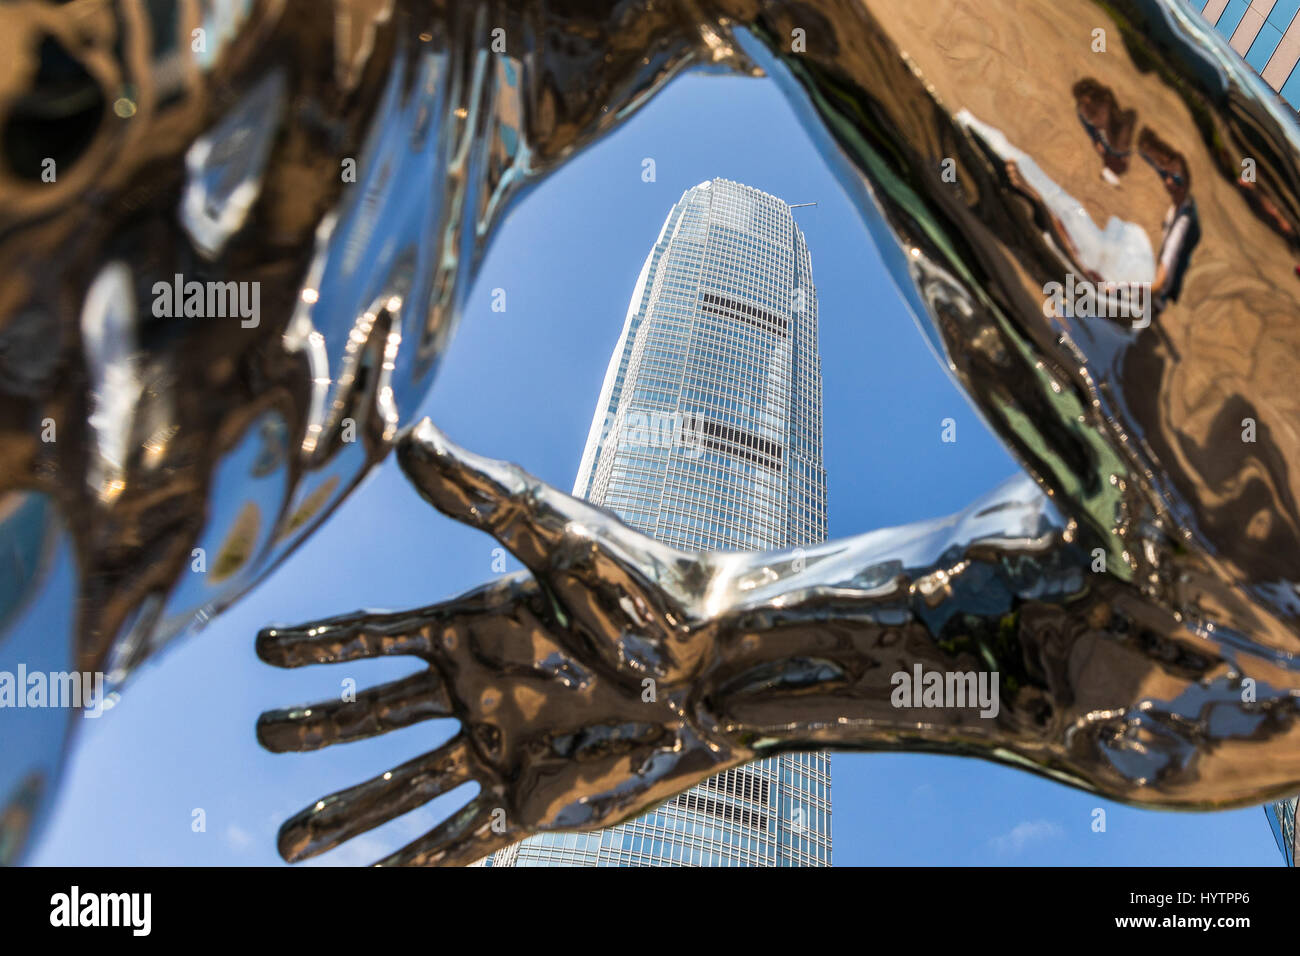 Images de la SFI, le plus haut bâtiment de Hong Kong sur l'île. Réflexions du bâtiment capturé sur un rare ciel bleu clair jour à Hong Kong. Banque D'Images